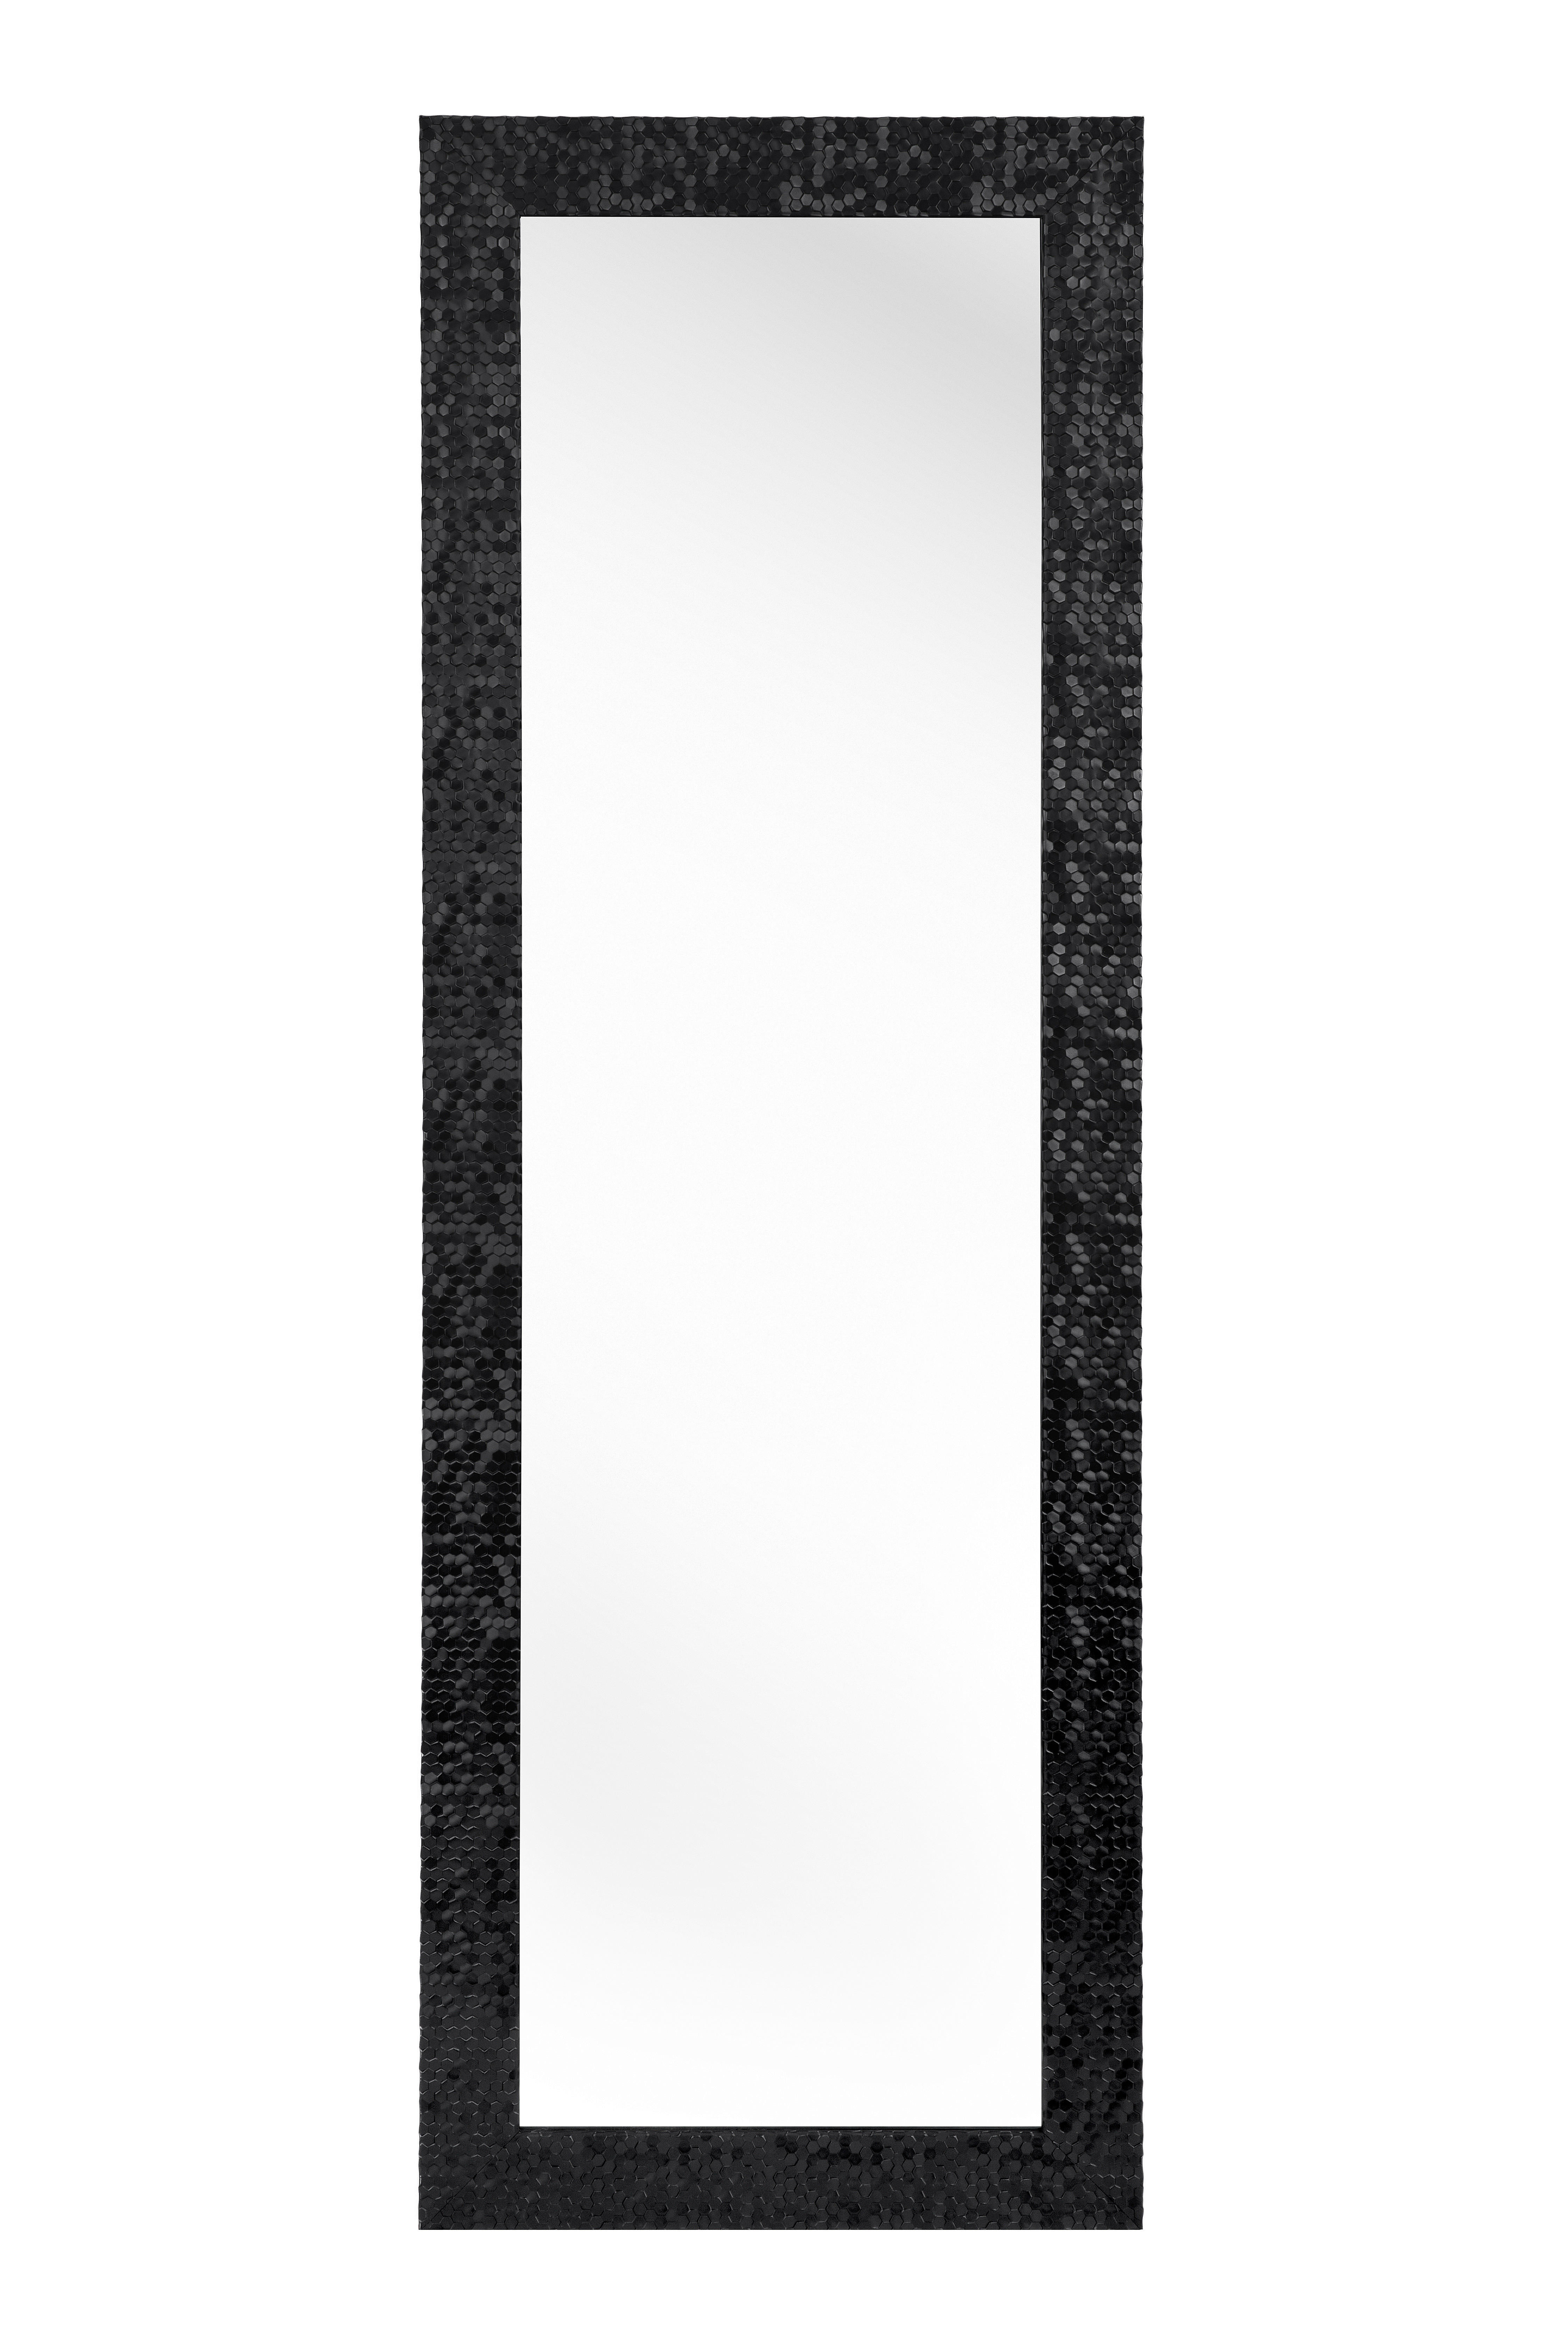 WANDSPIEGEL Schwarz  - Schwarz, LIFESTYLE, Glas/Kunststoff (50/150/2cm) - Carryhome